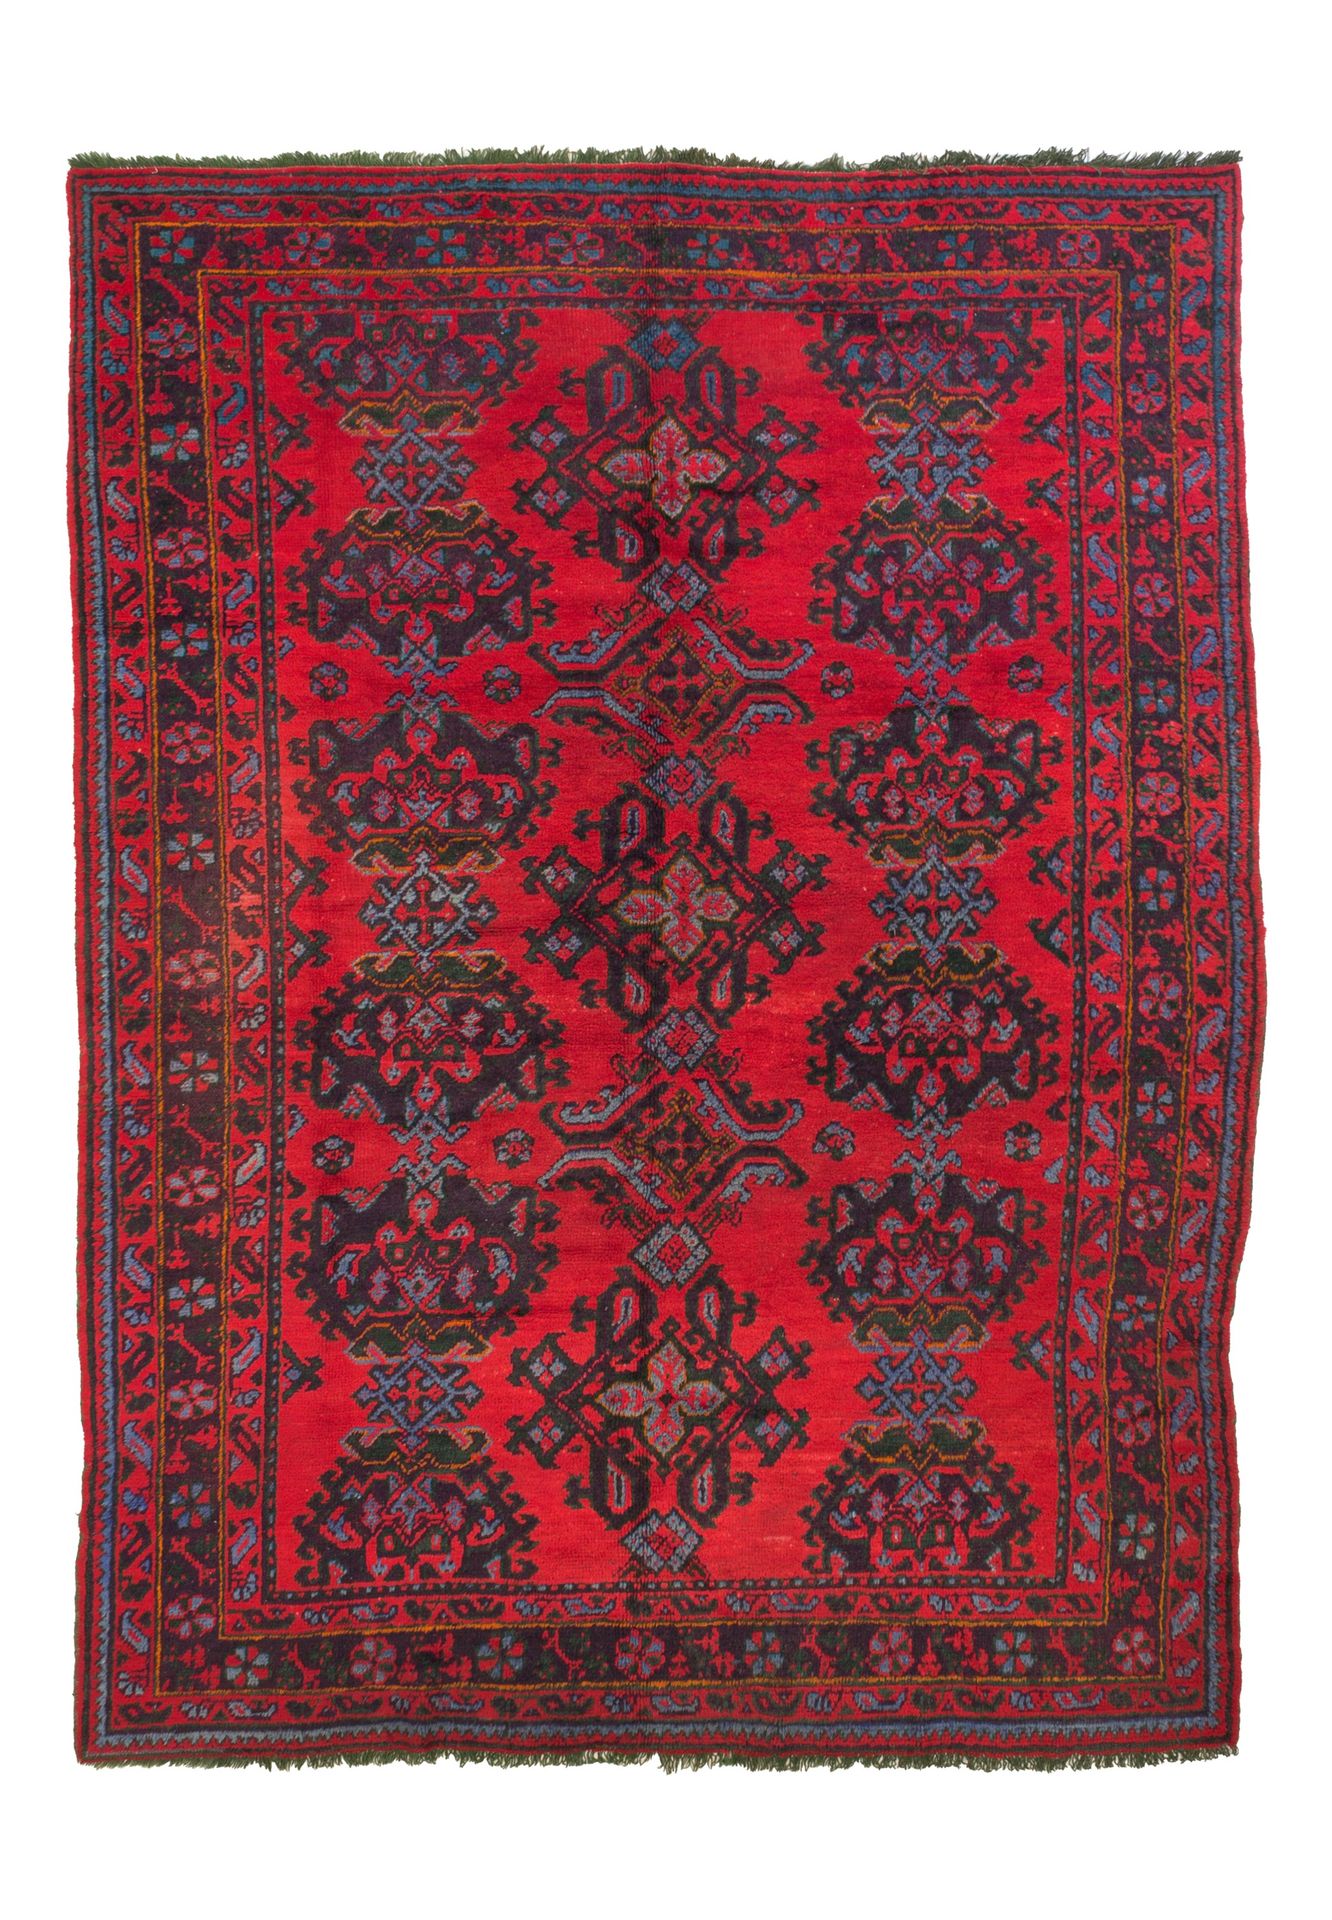 Ushack carpet 乌沙克羊毛地毯。安纳托利亚中部。20世纪初。完美的保存状态。332x280厘米约。